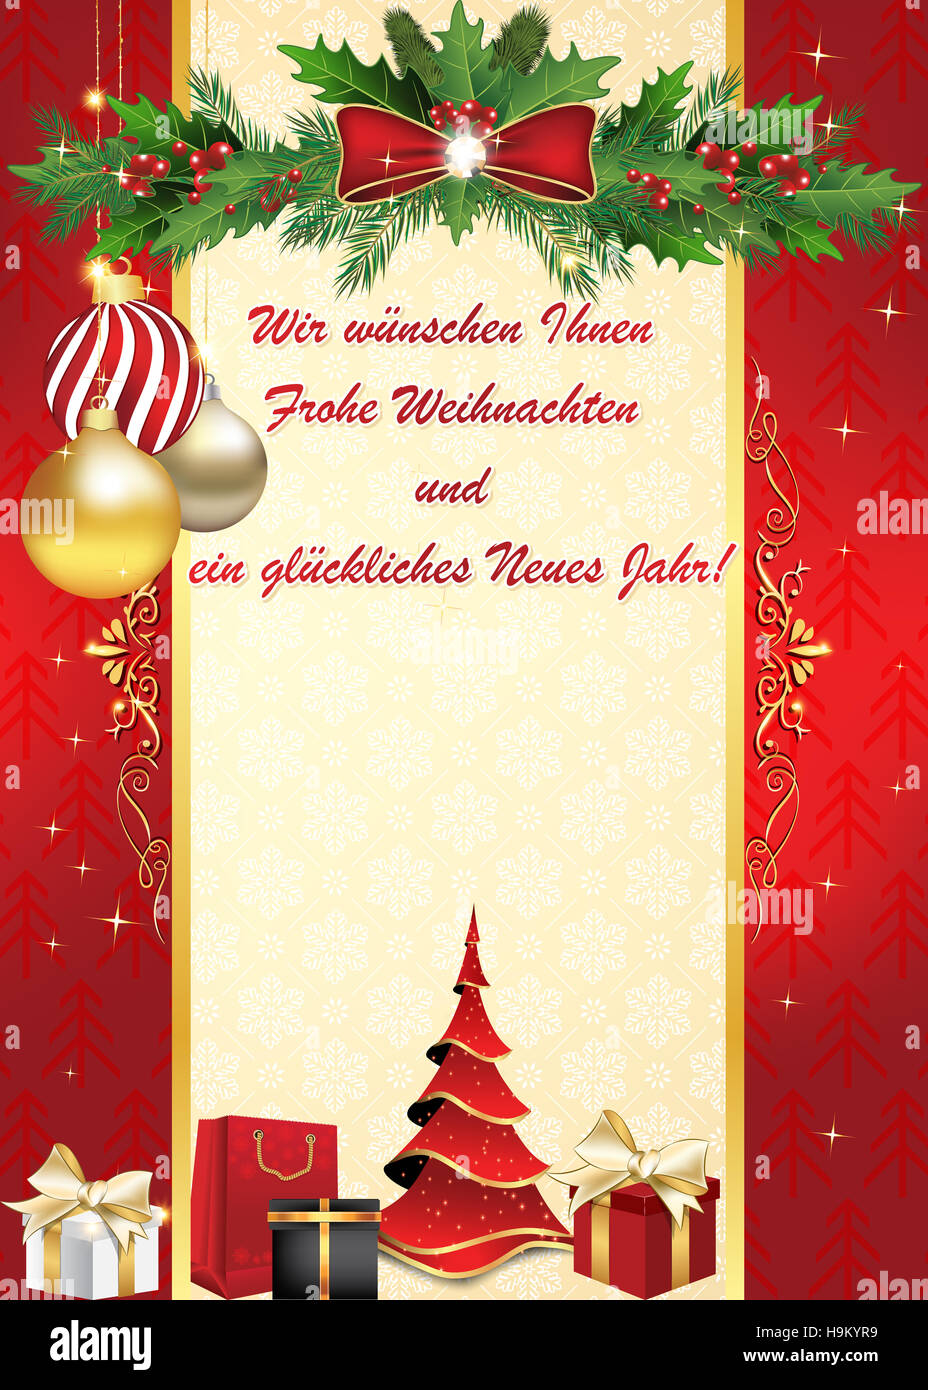 Grußkarte zum Thema Neues Jahr: Frohe Weihnachten und ein Glückliches Neues Jahr Grußkarte. Stock Photo